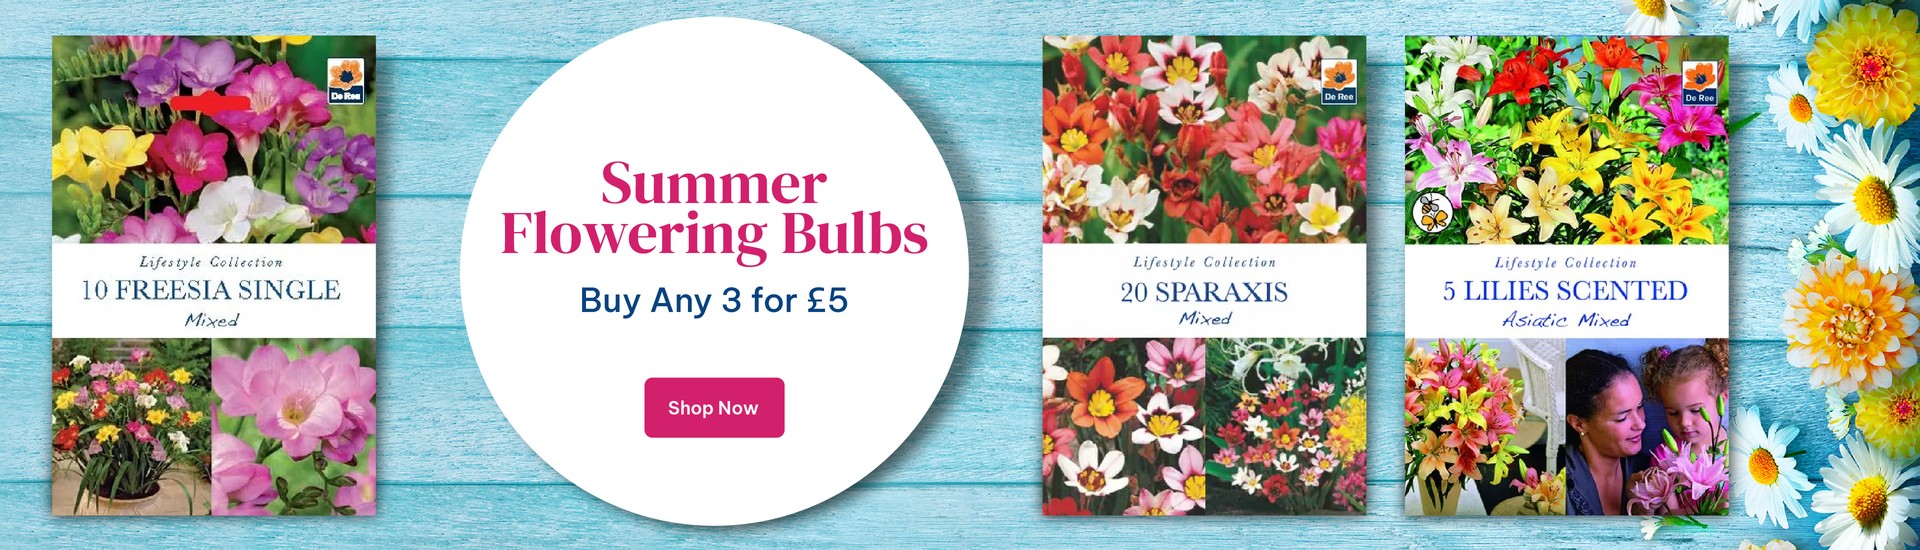 3 For £5 On Summer Flowering Bulbs